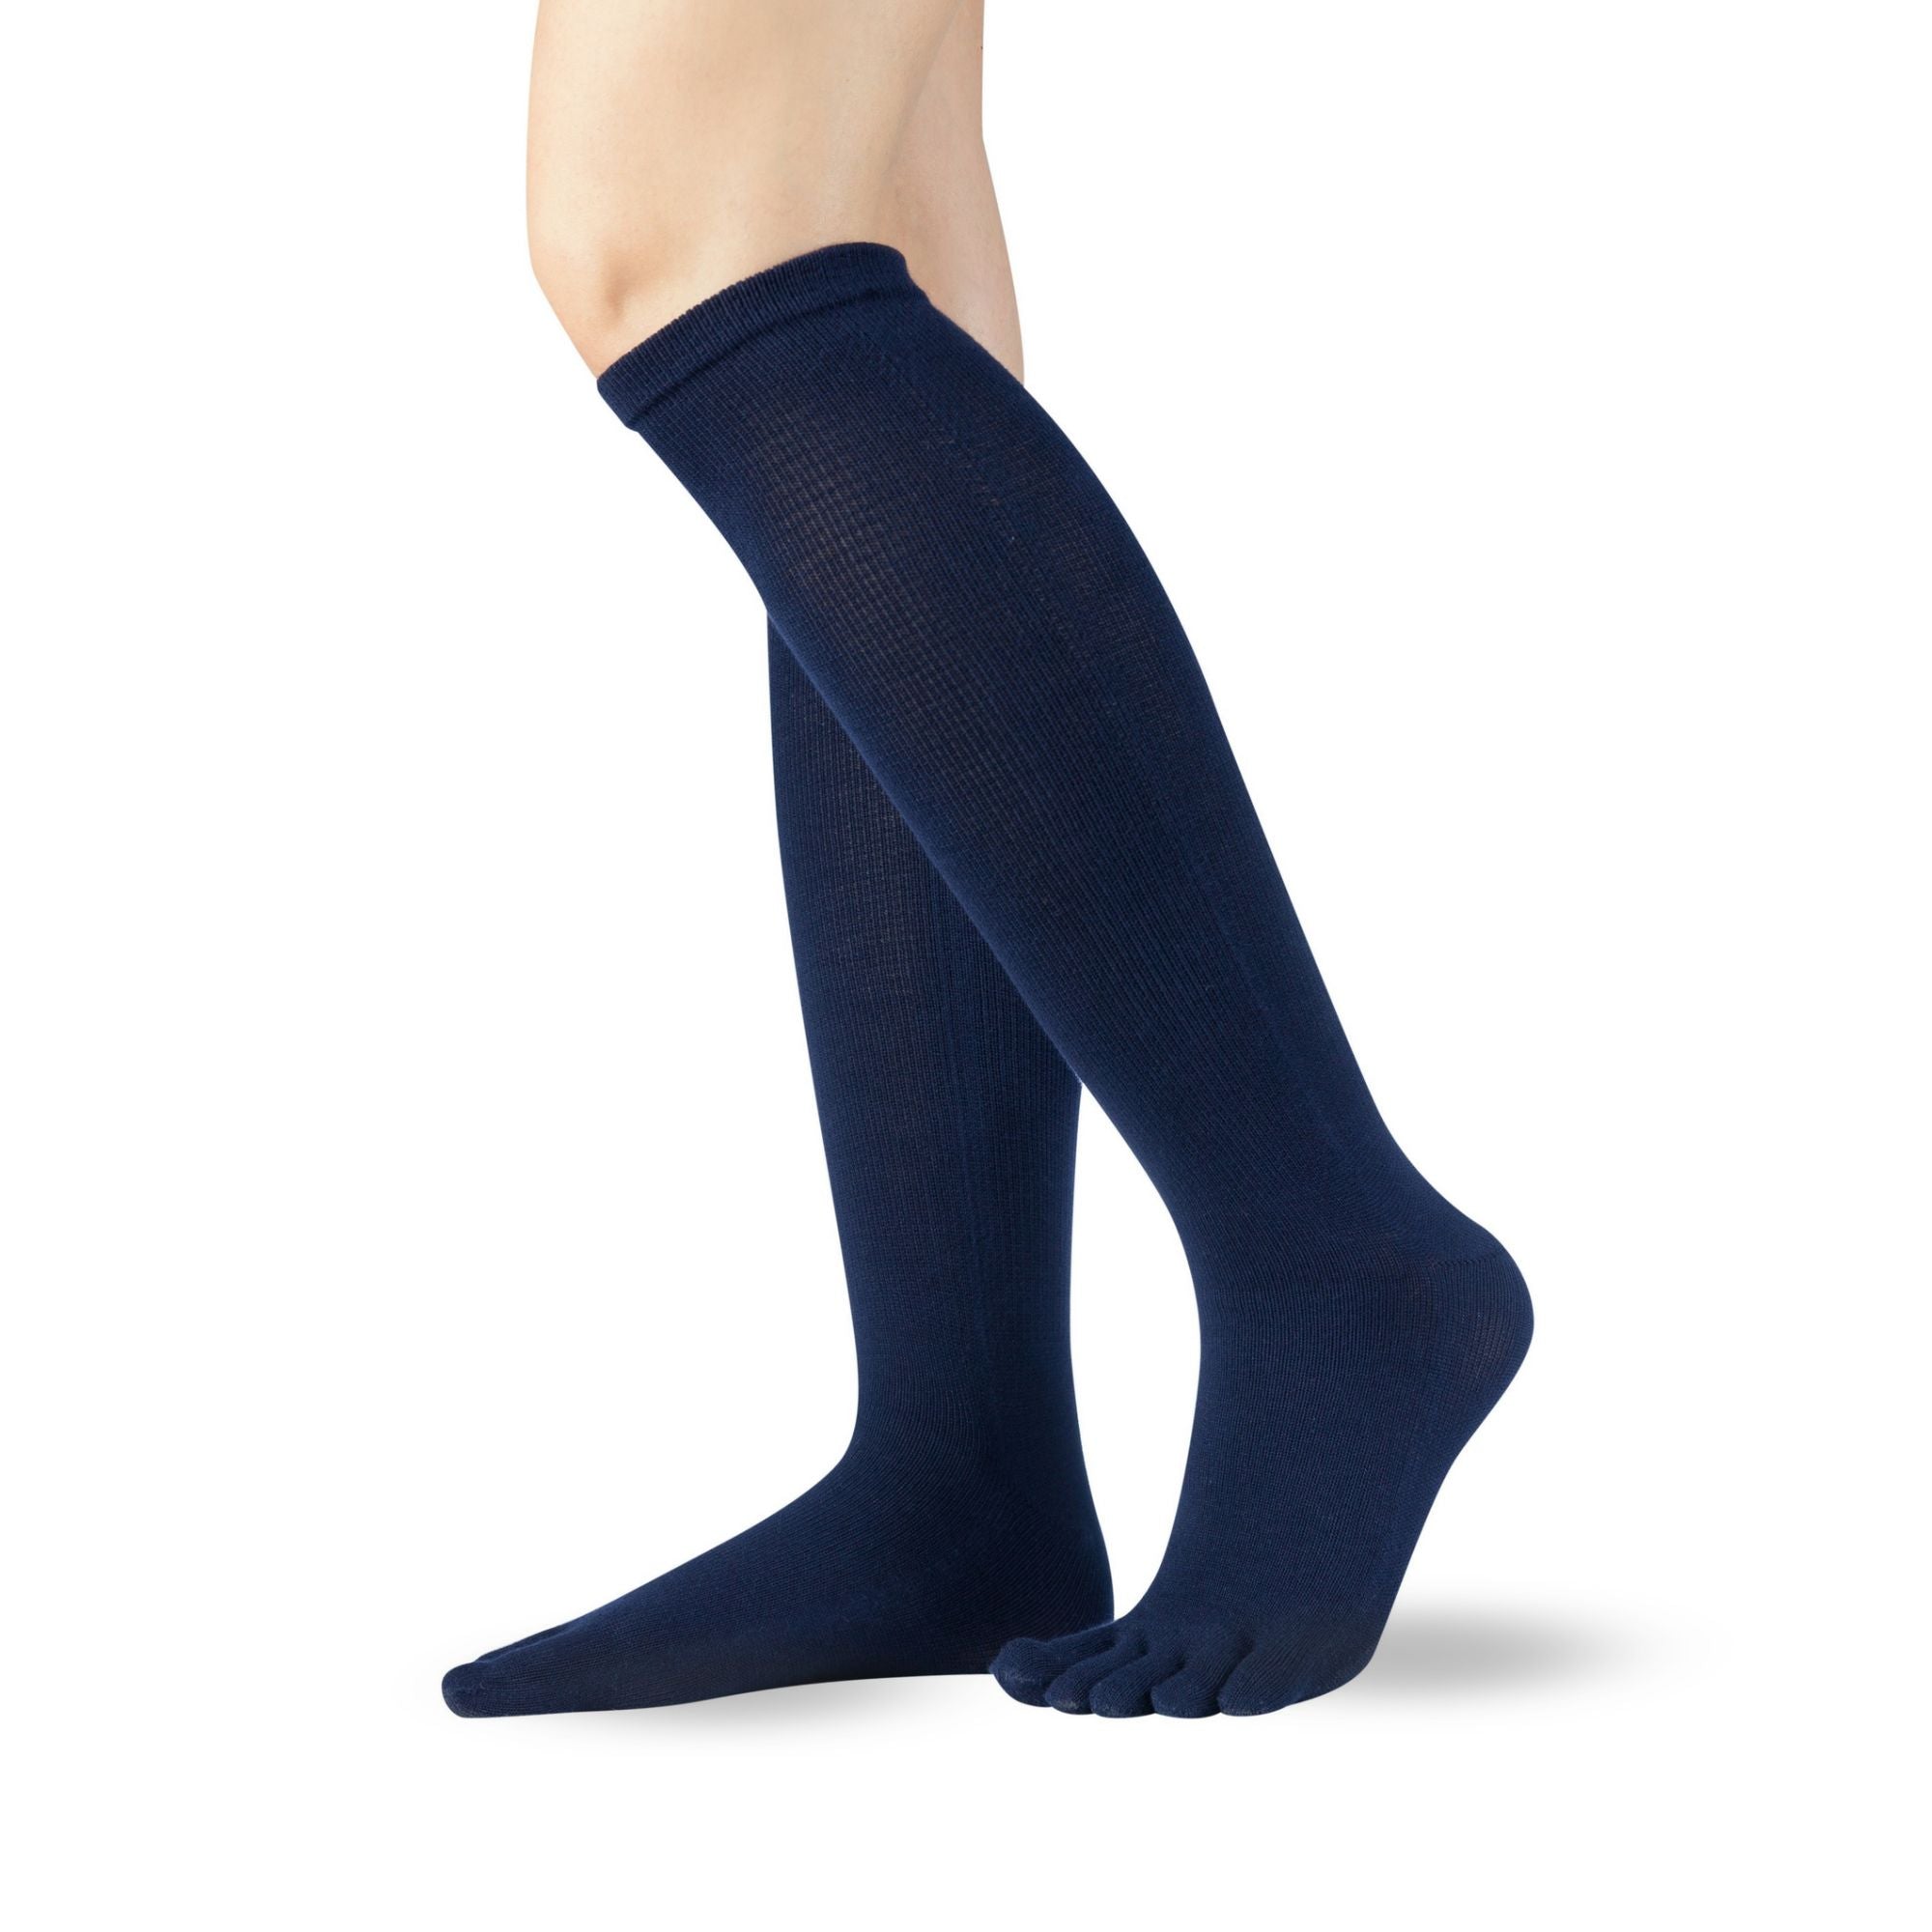 Knitido Essentials Calcetines de algodón hasta la rodilla de lado en azul marino